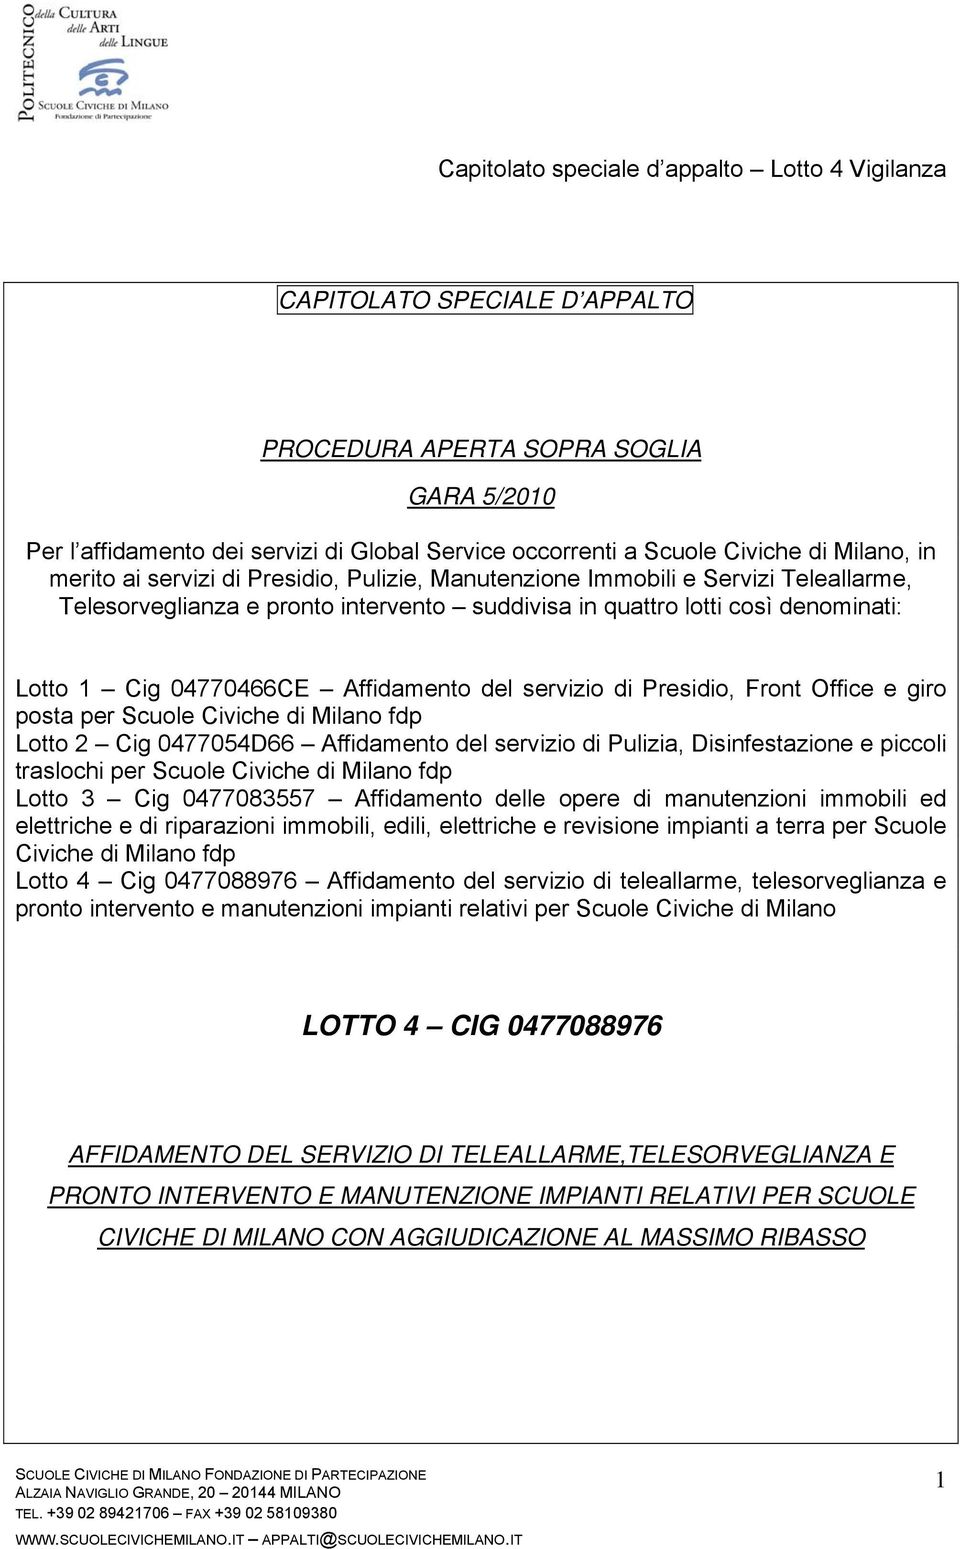 Front Office e giro posta per Scuole Civiche di Milano fdp Lotto 2 Cig 0477054D66 Affidamento del servizio di Pulizia, Disinfestazione e piccoli traslochi per Scuole Civiche di Milano fdp Lotto 3 Cig